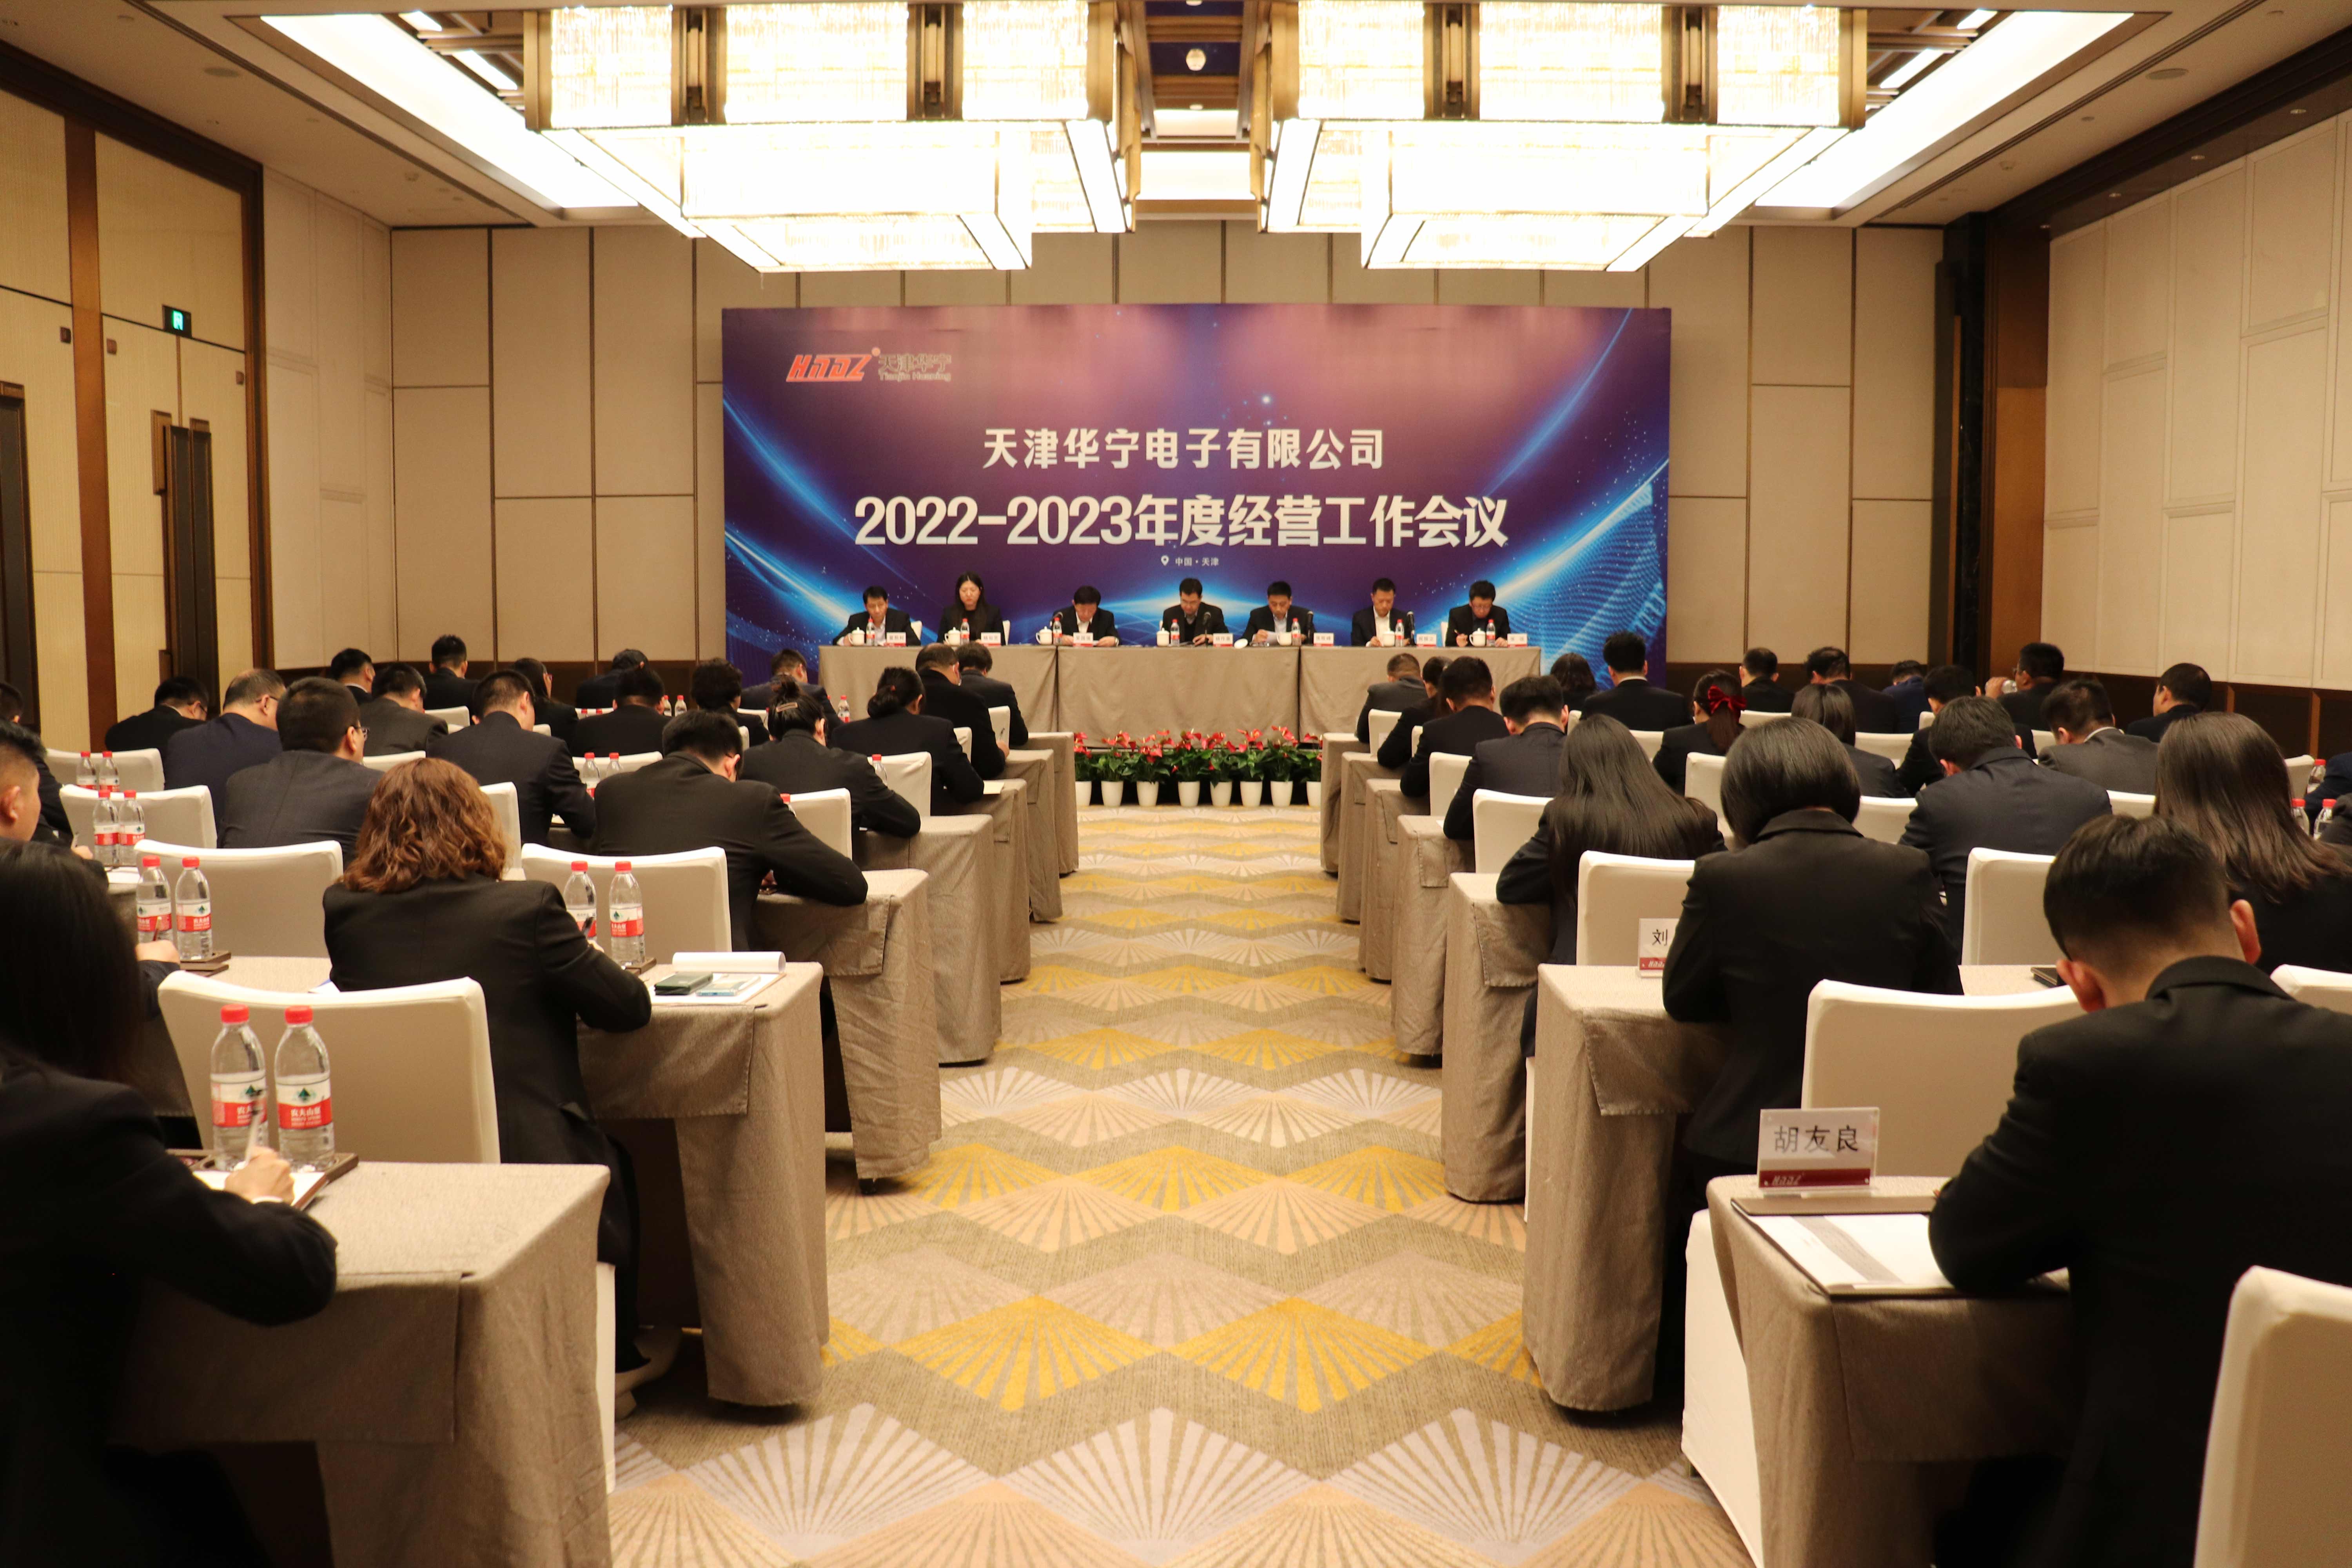 2022-2023年度经营工作会议